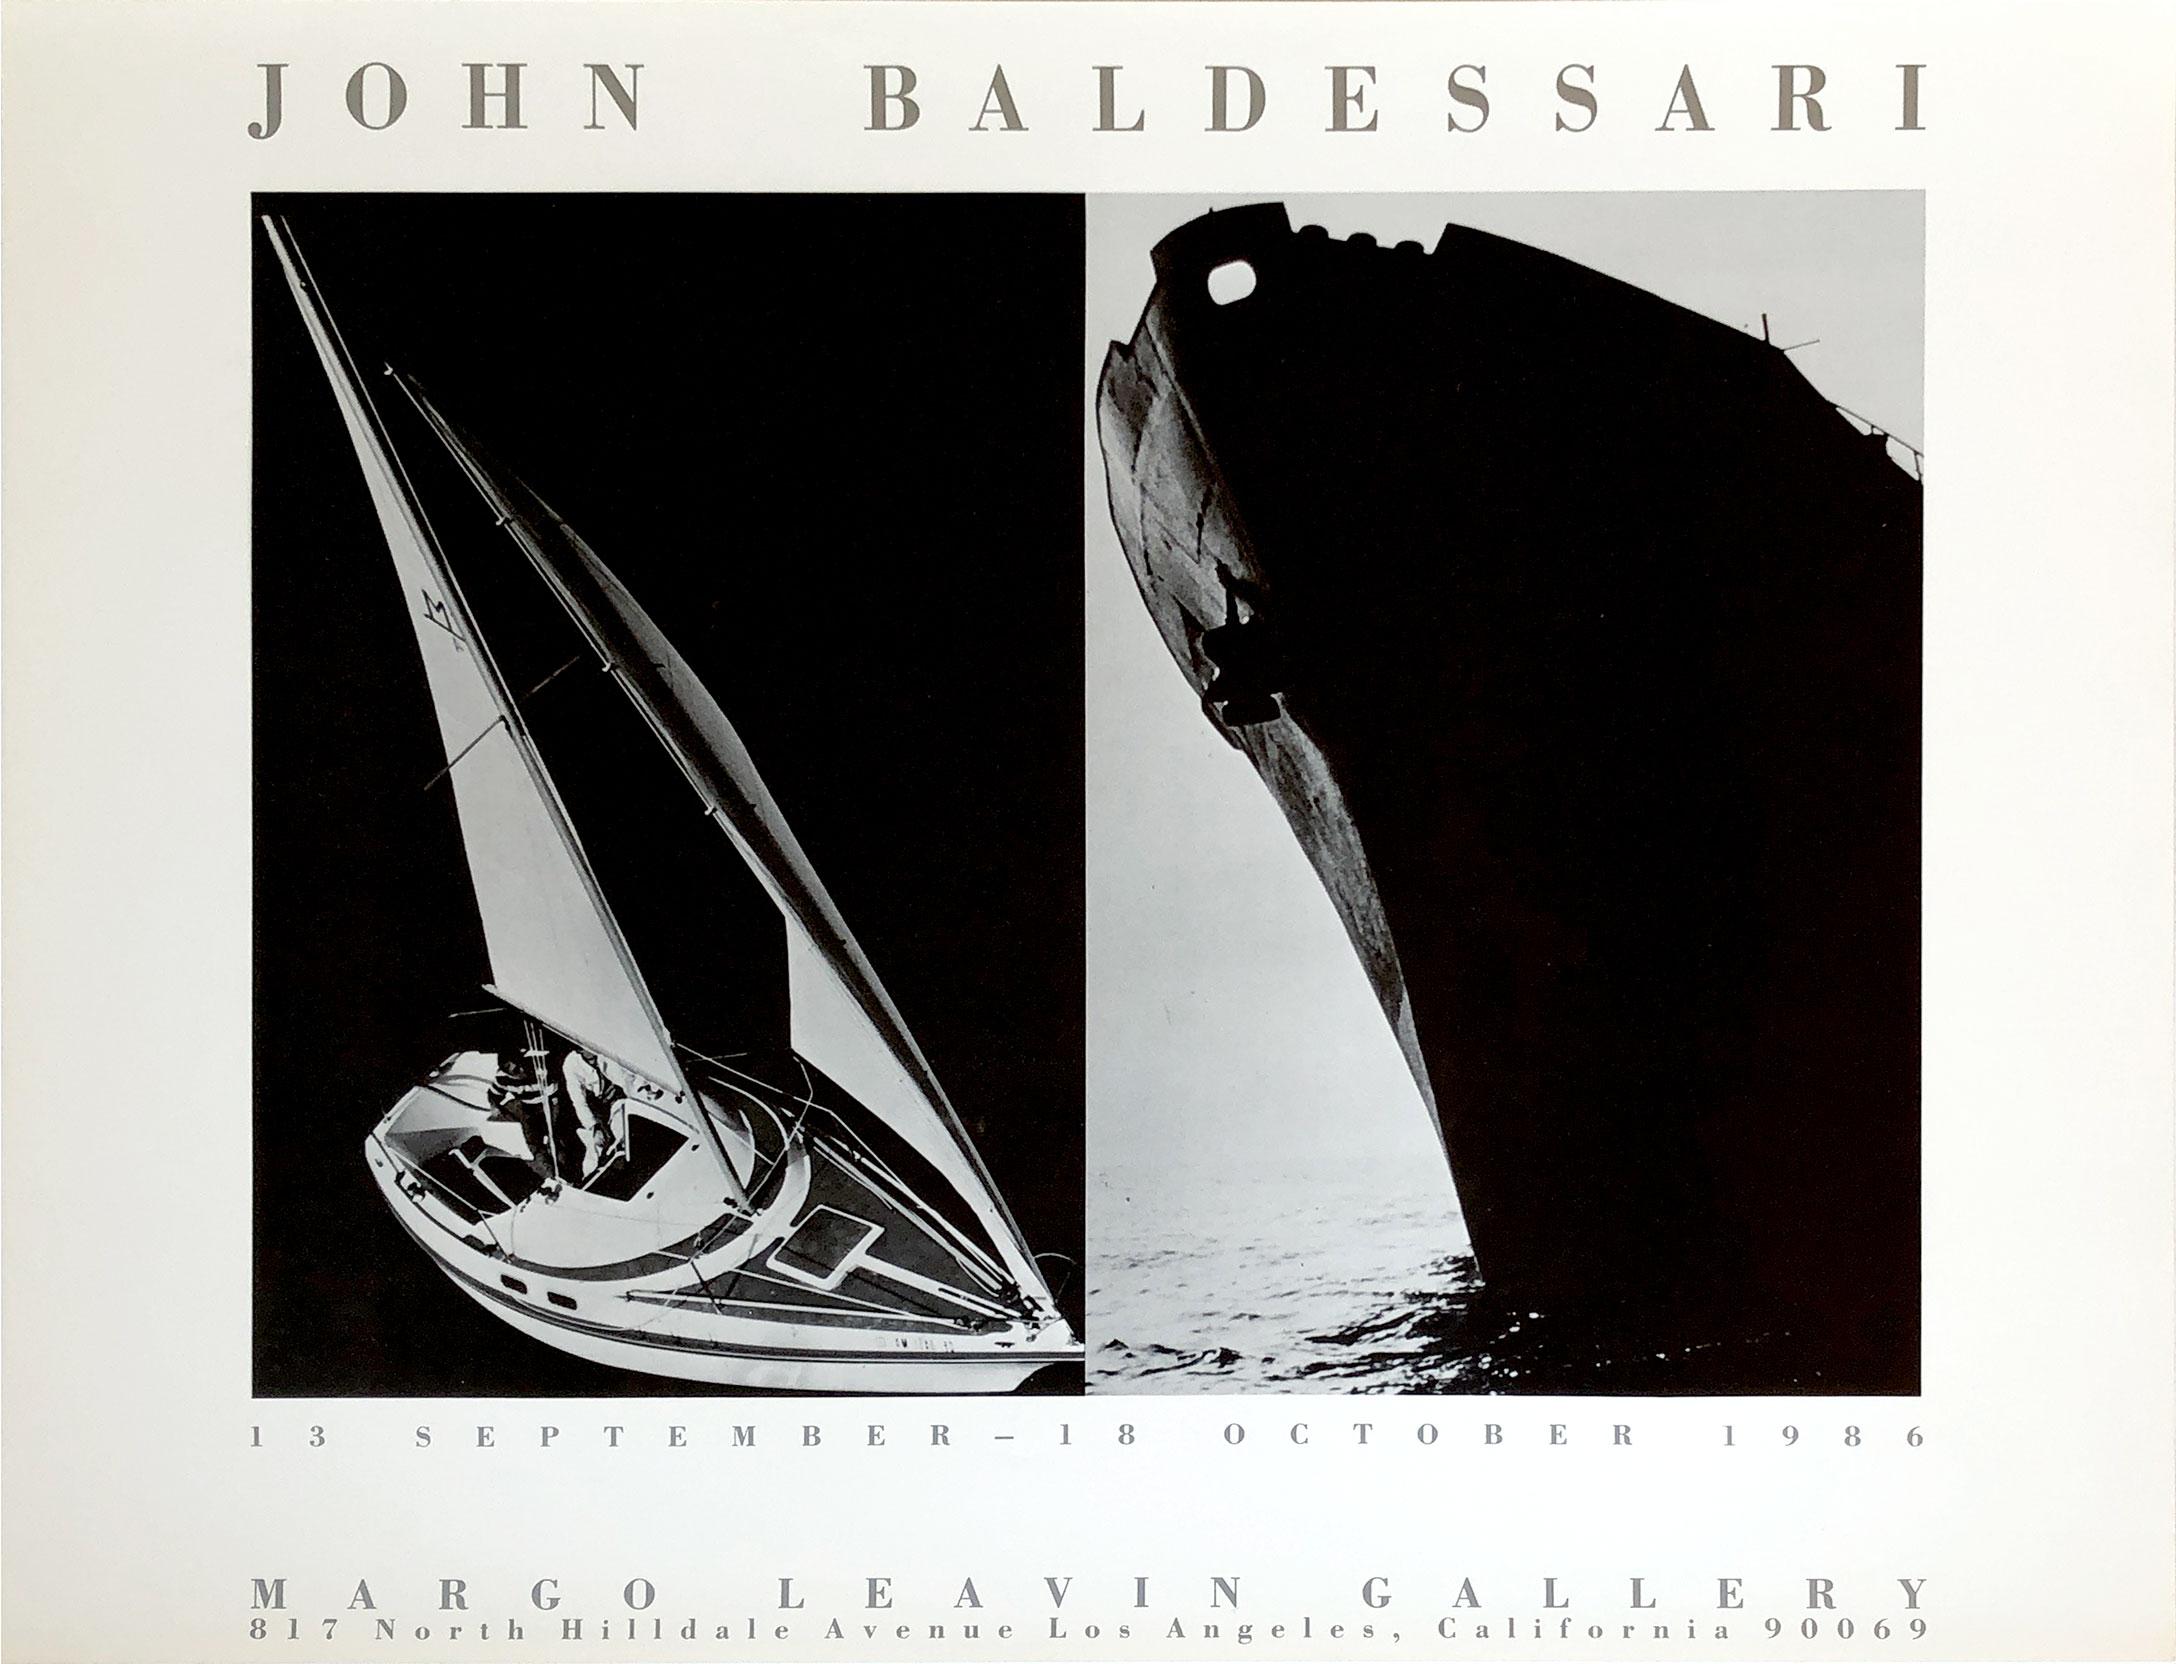 John Baldessari
"John Baldessari [Zwei Schiffe]"
Margo Leavin Gallery, Los Angeles, 1986
Ausstellungsplakat
18 x 24 Zoll
Vorzeichenlos